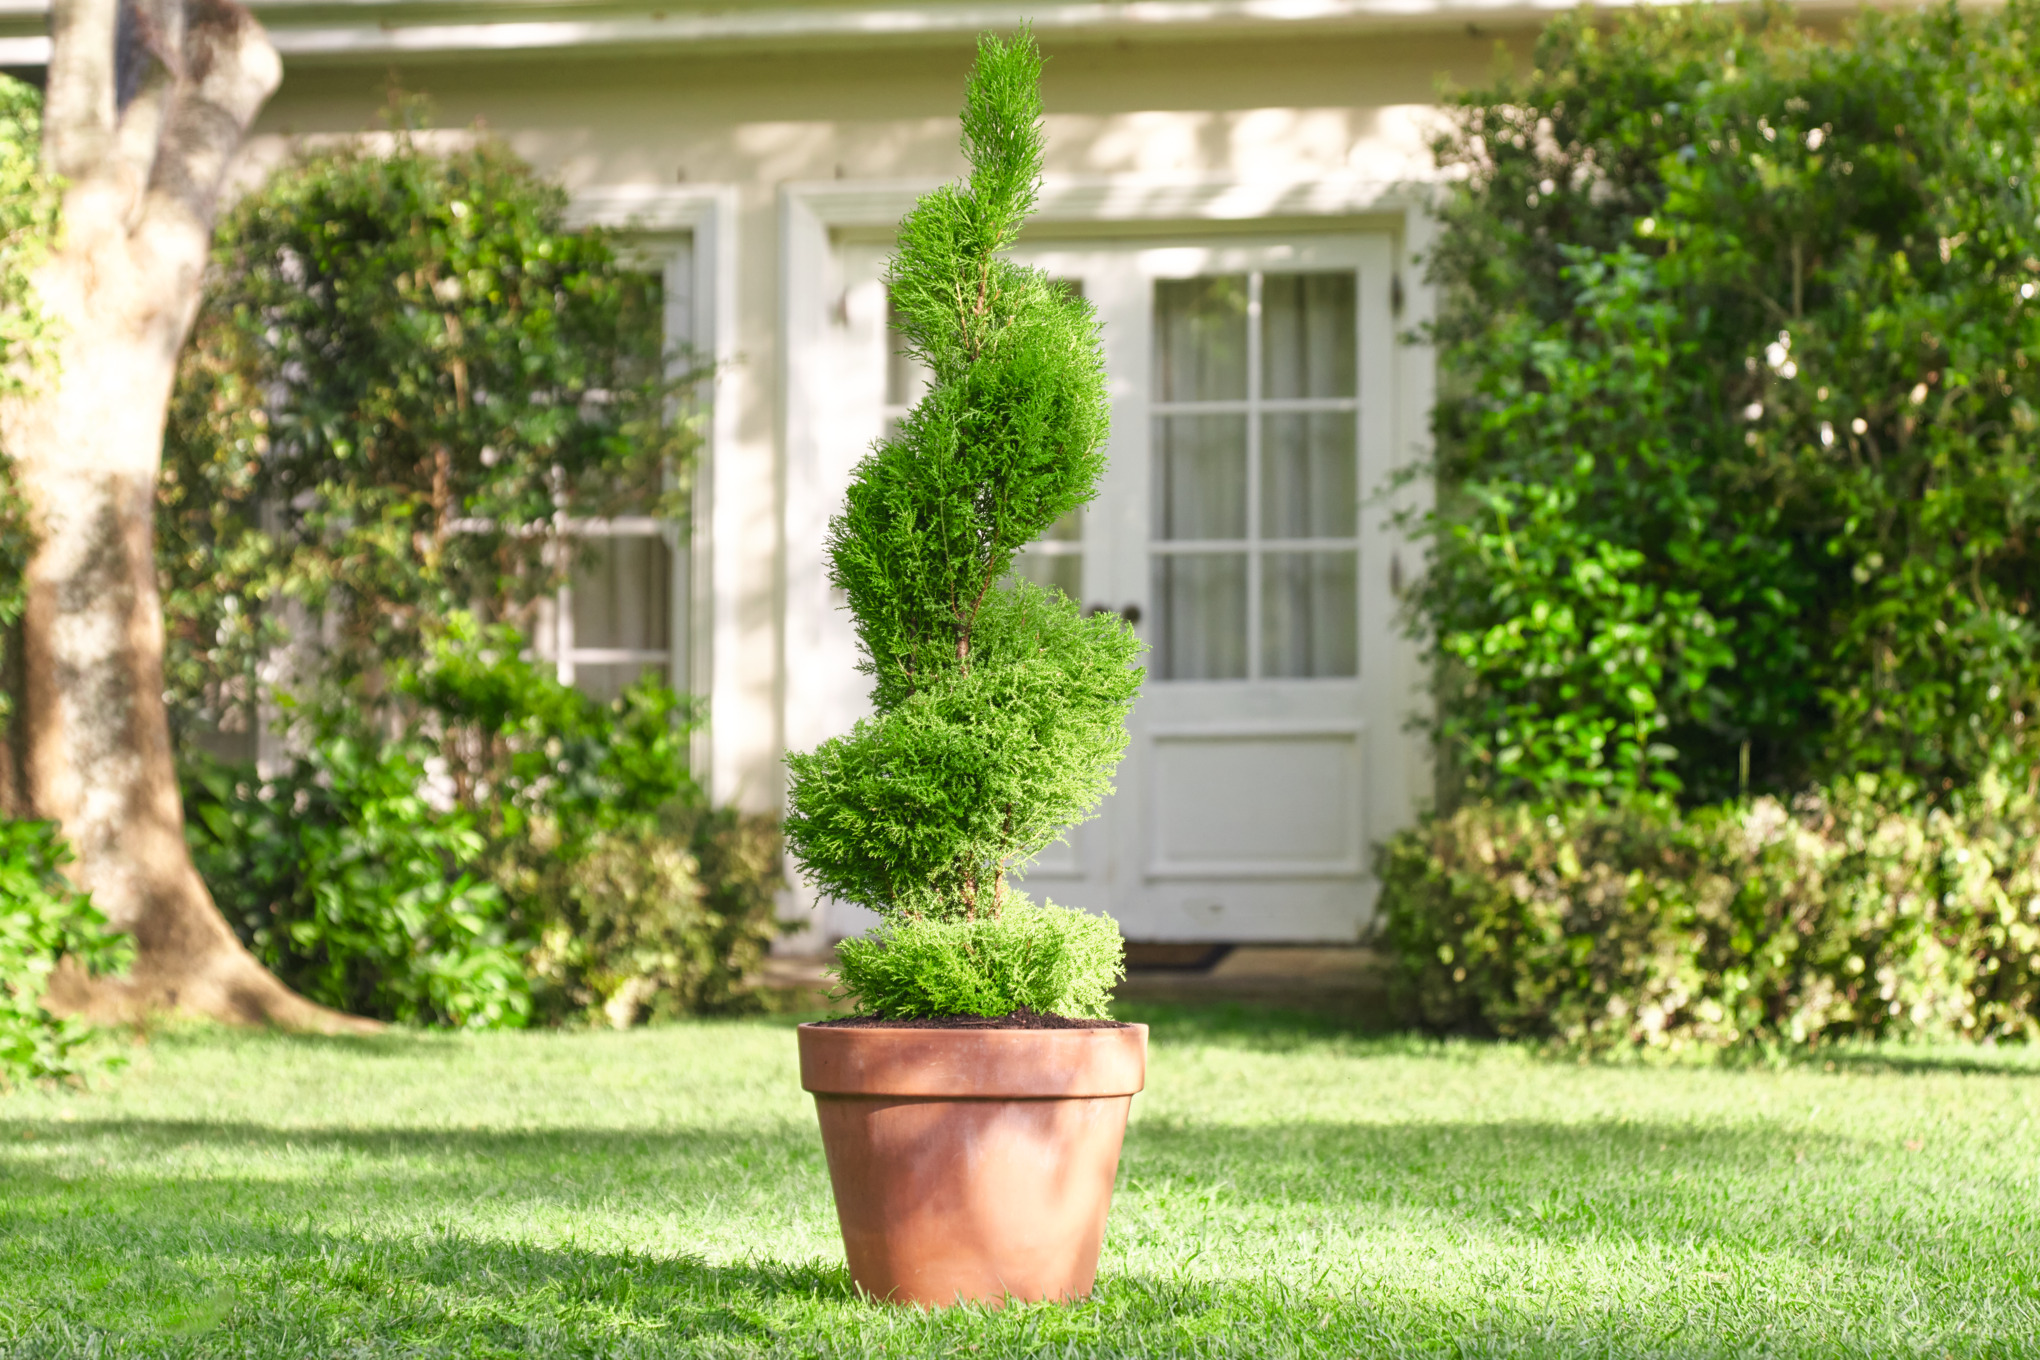 Buchsbaum-Topf in Spiralform auf dem Rasen eines Gartengrundstücks